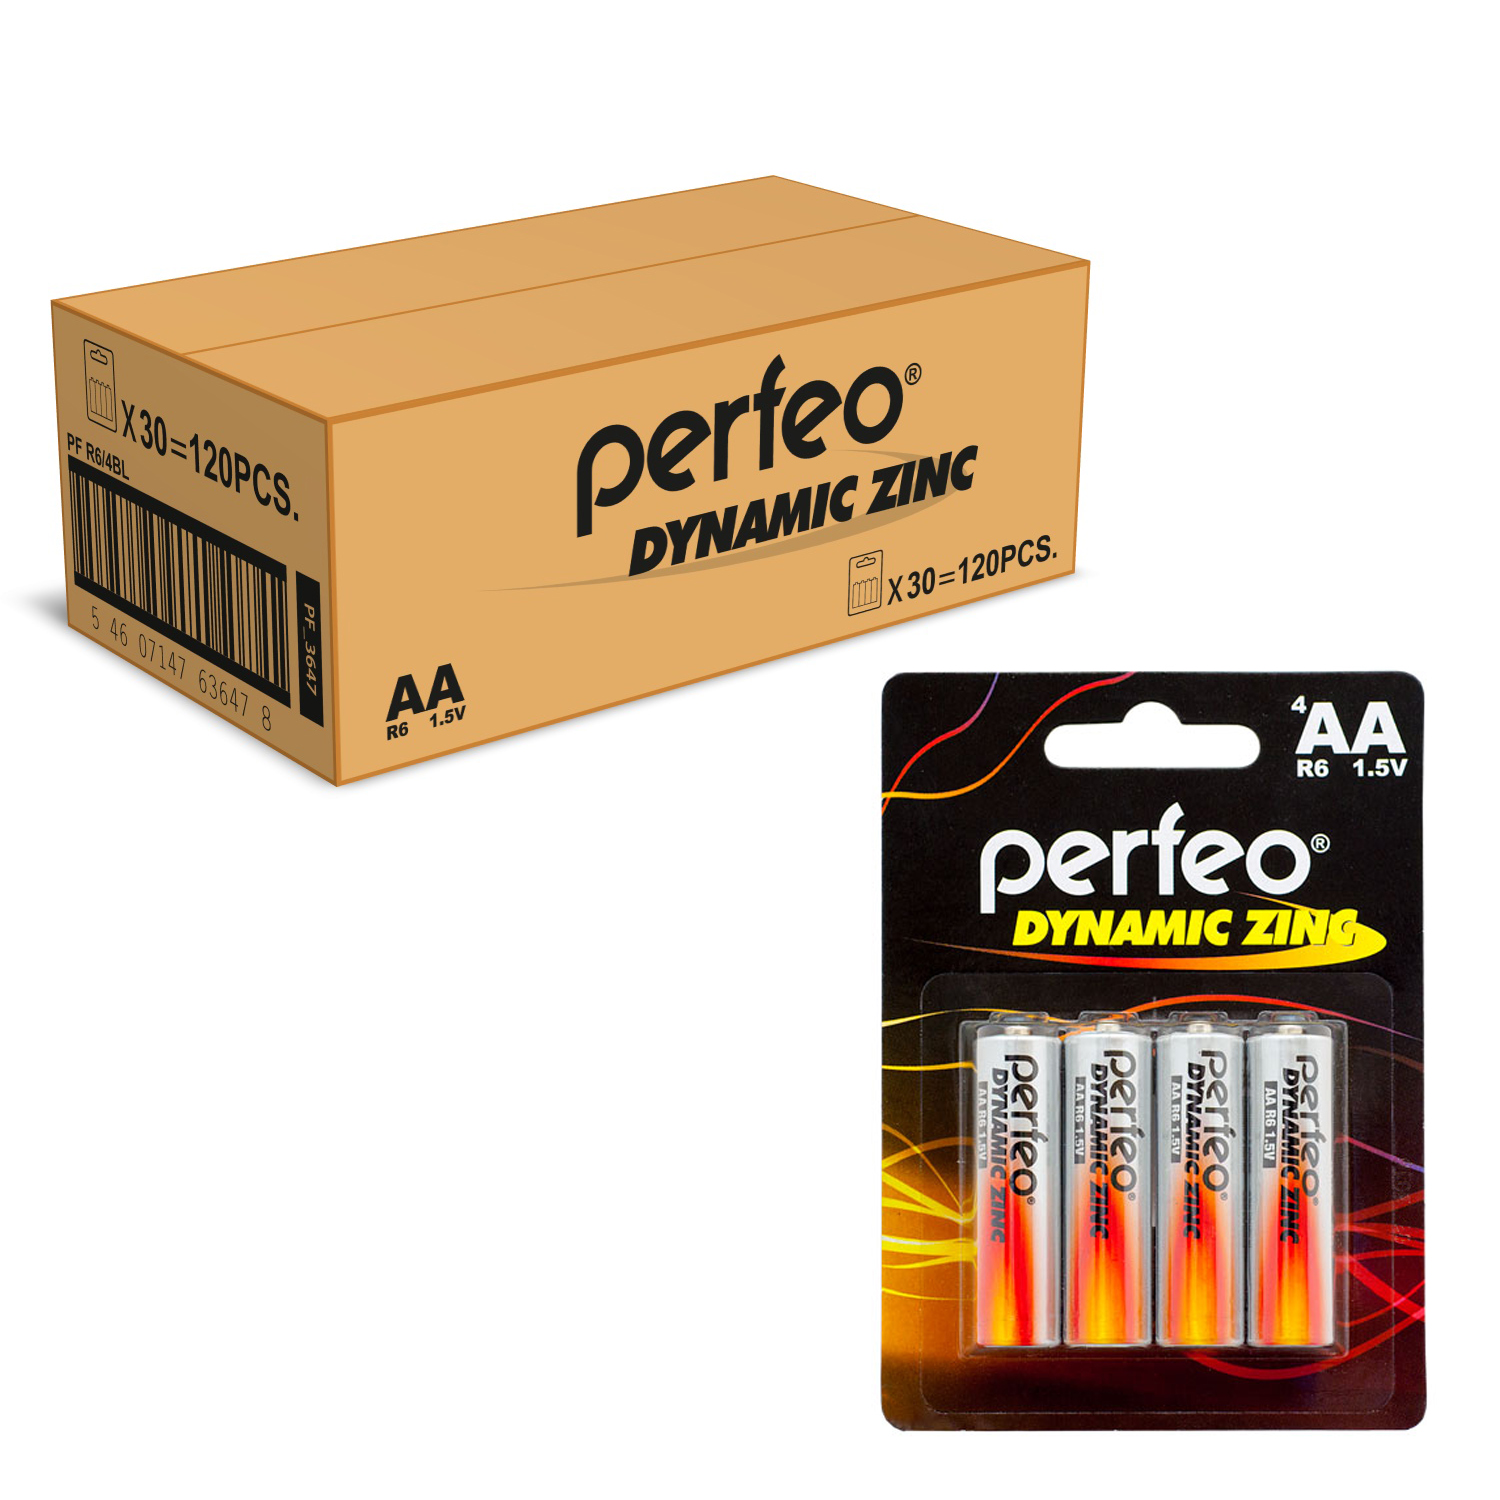 Батарейка Perfeo R6/4BL Dynamic Zinc 120 шт батарейки perfeo dynamic zinc ааа lr03 60 шт 15x4 шт